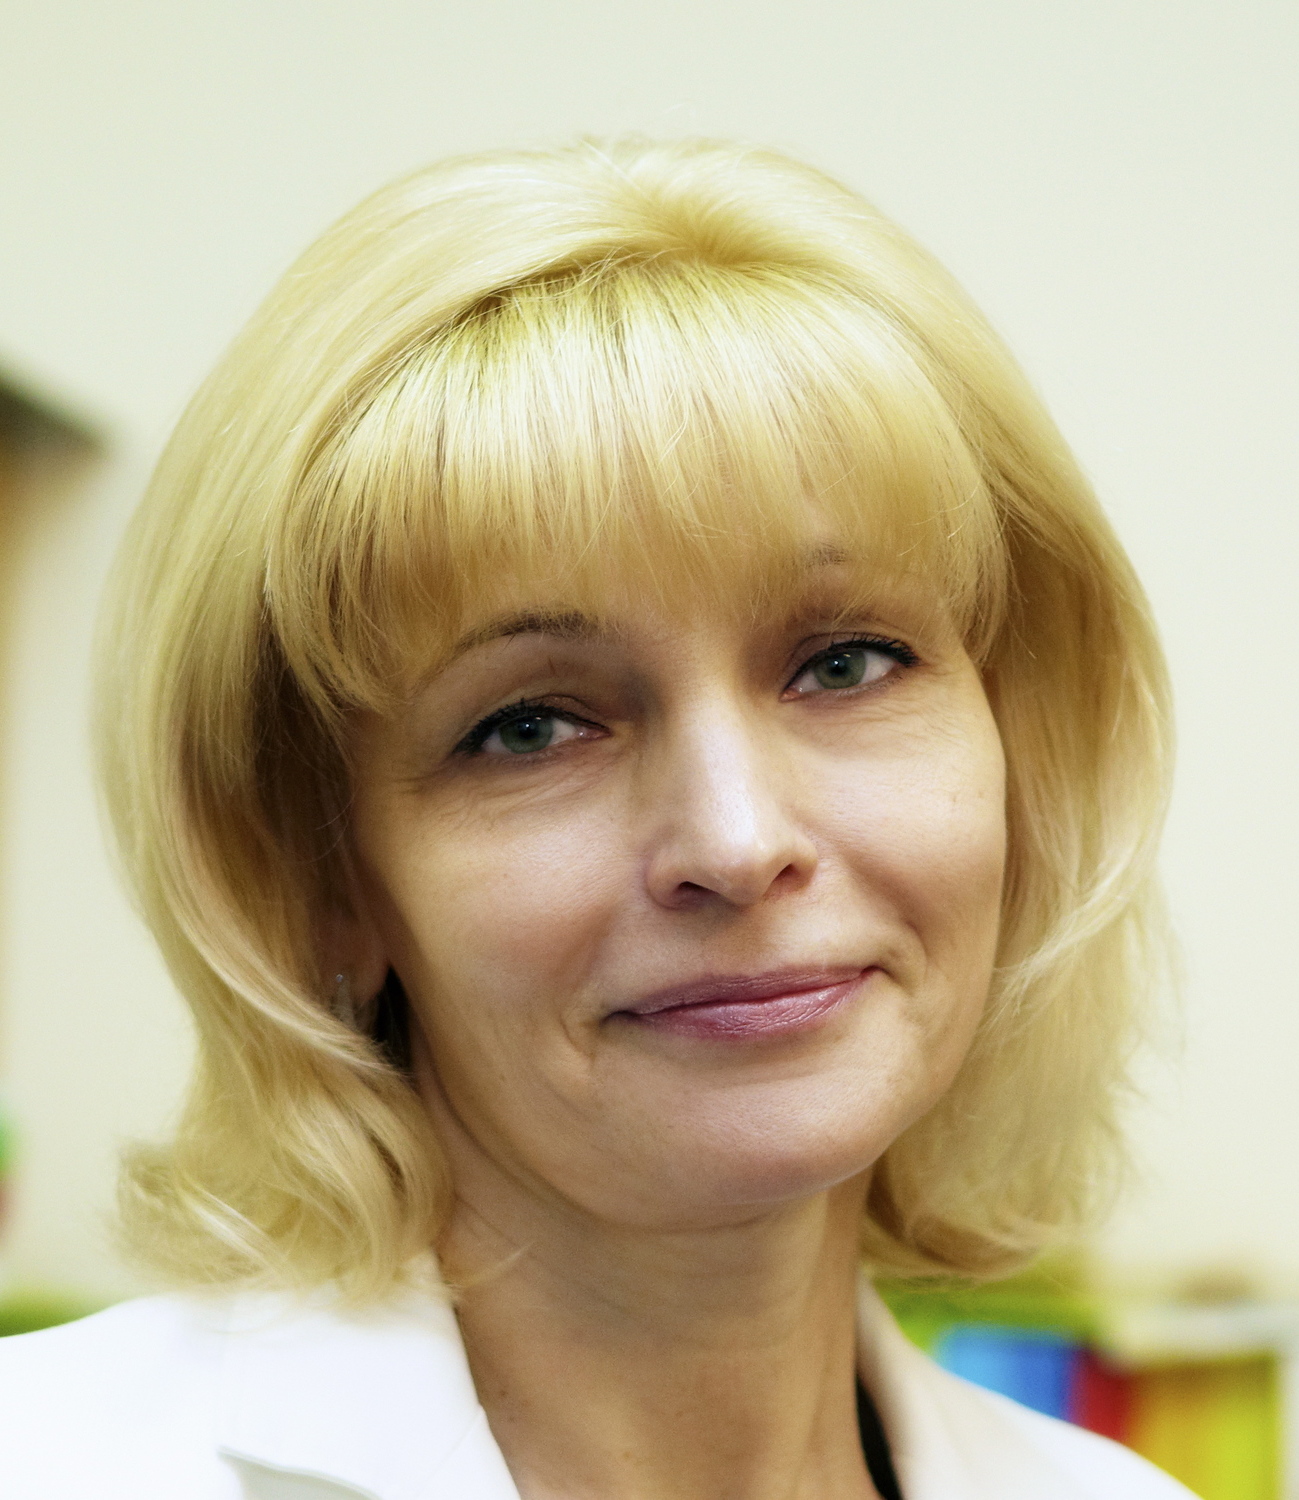 Павлова Ирина Николаевна